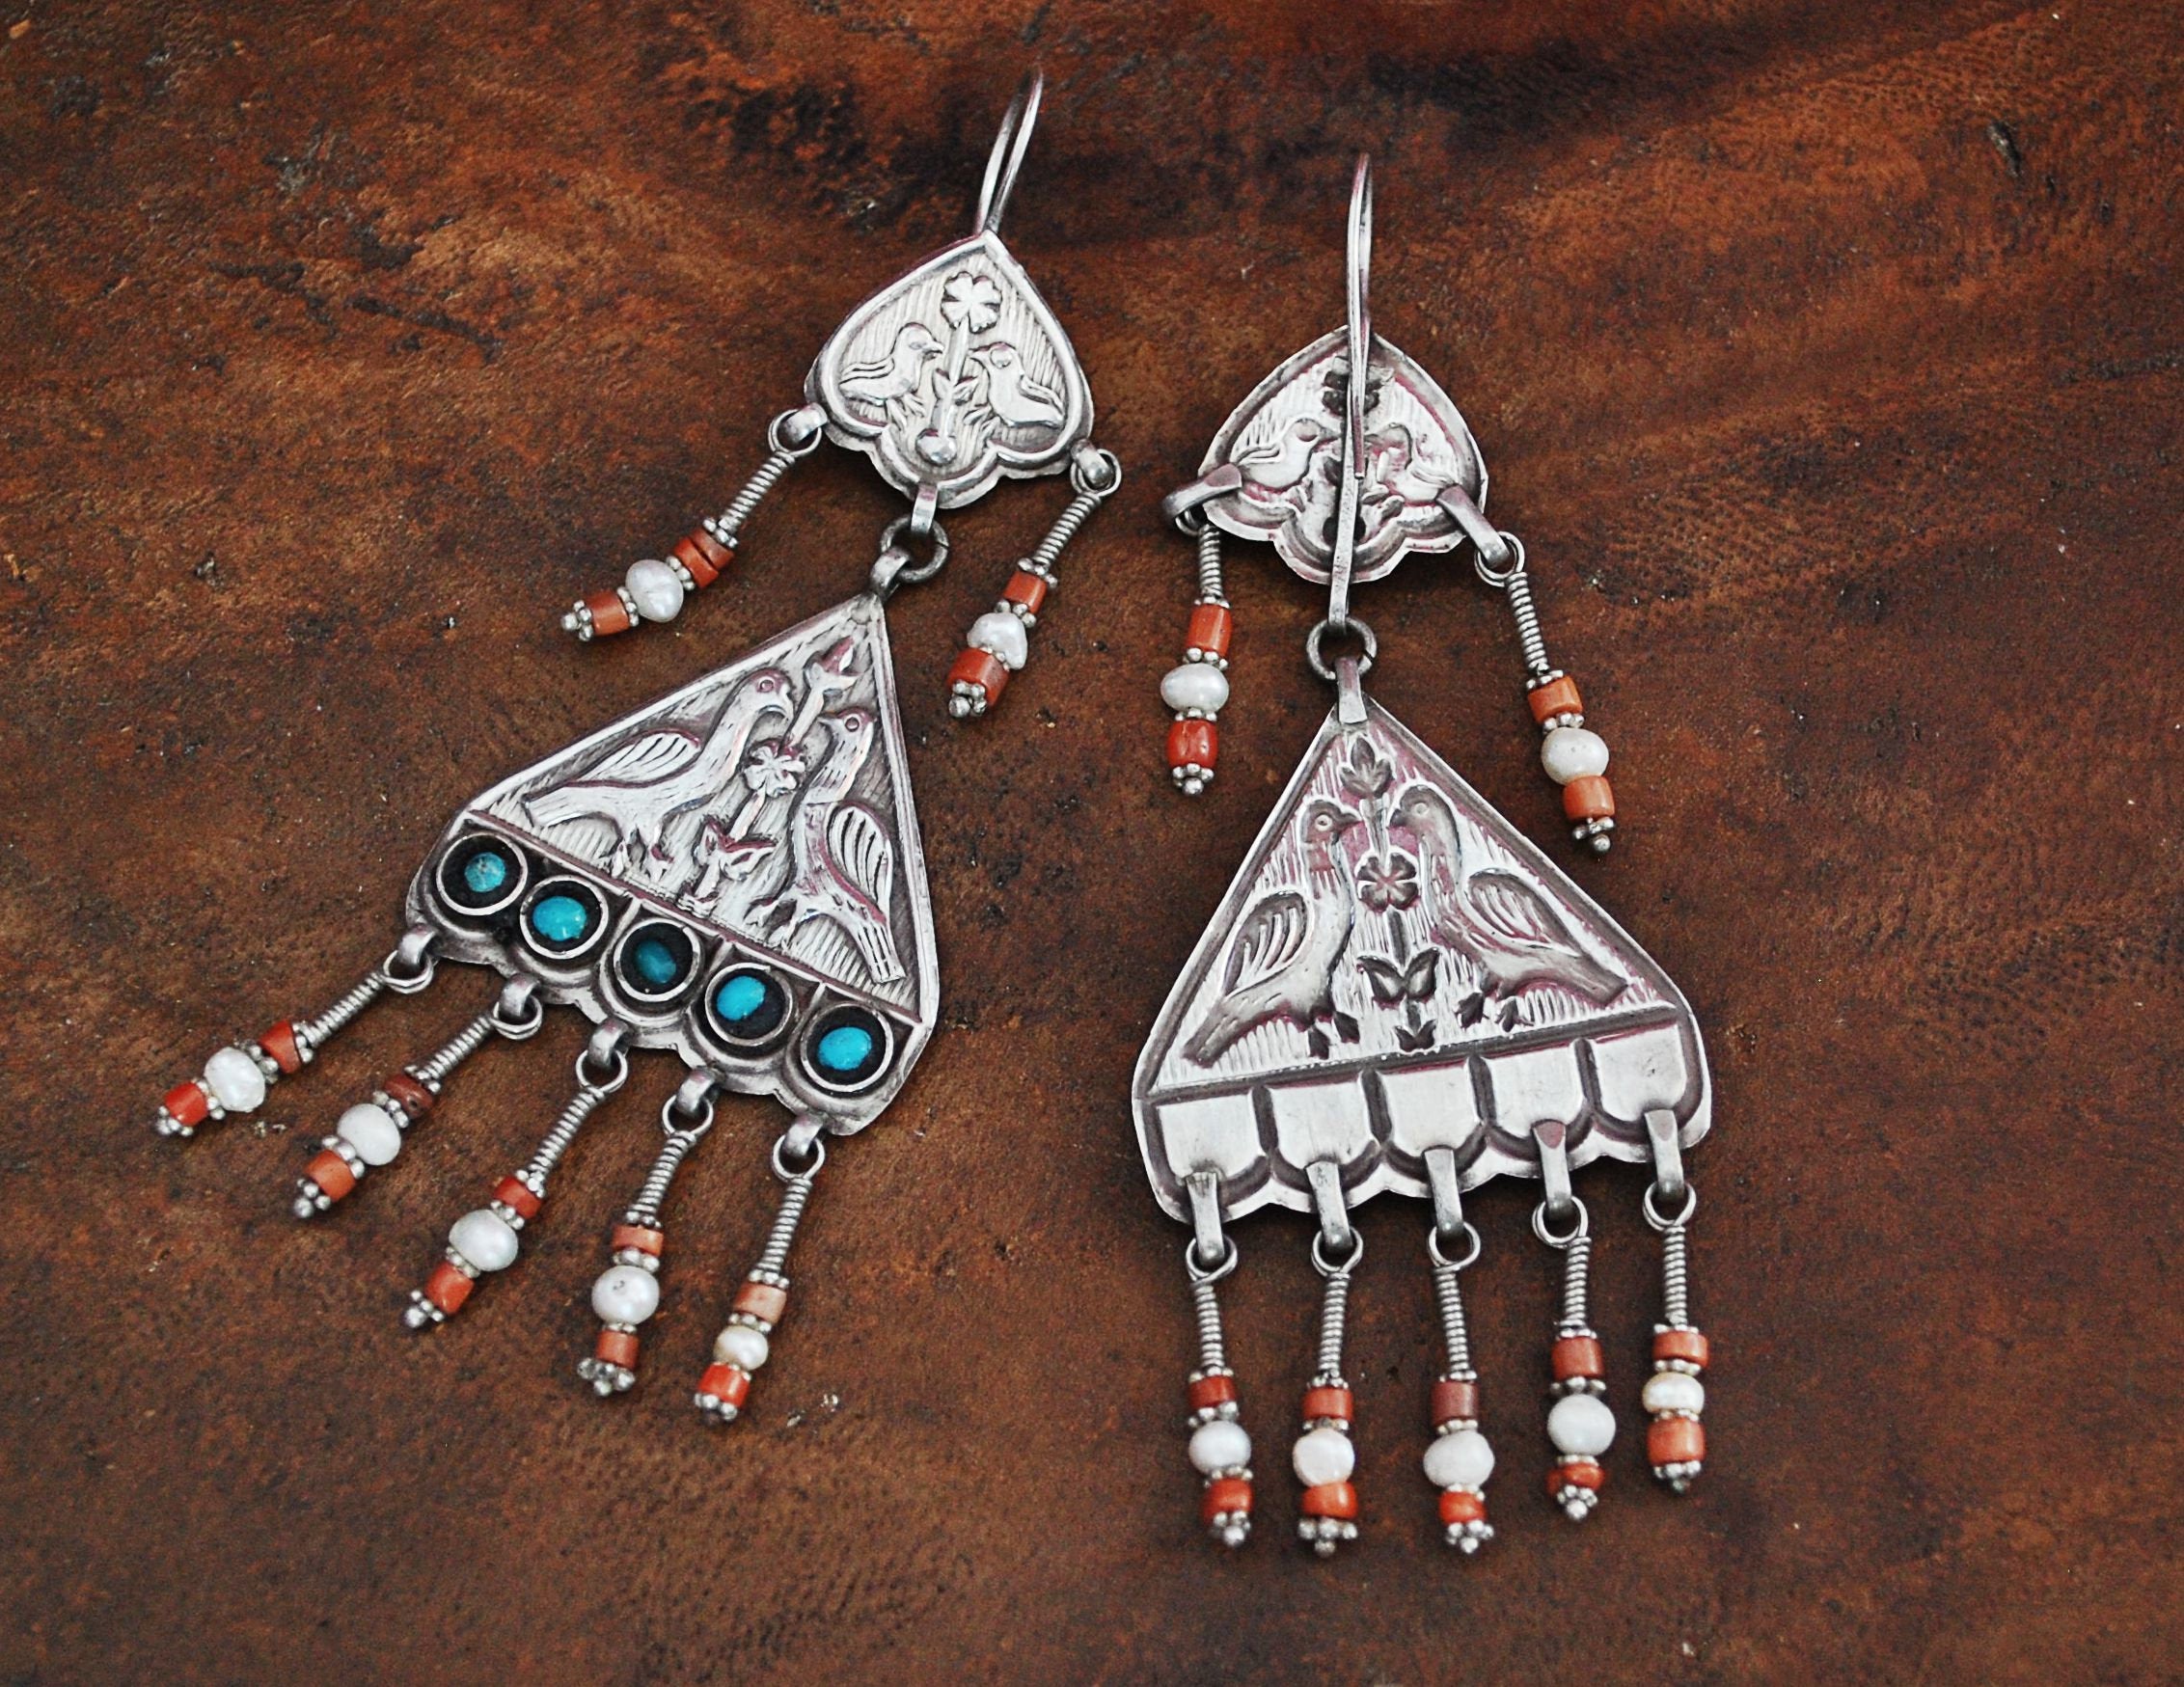 Uzbek Coral Earrings - Central Asian Earrings - Tribal Coral Turquoise Earrings - Uzbekistan Jewelry - Tribal Earrings